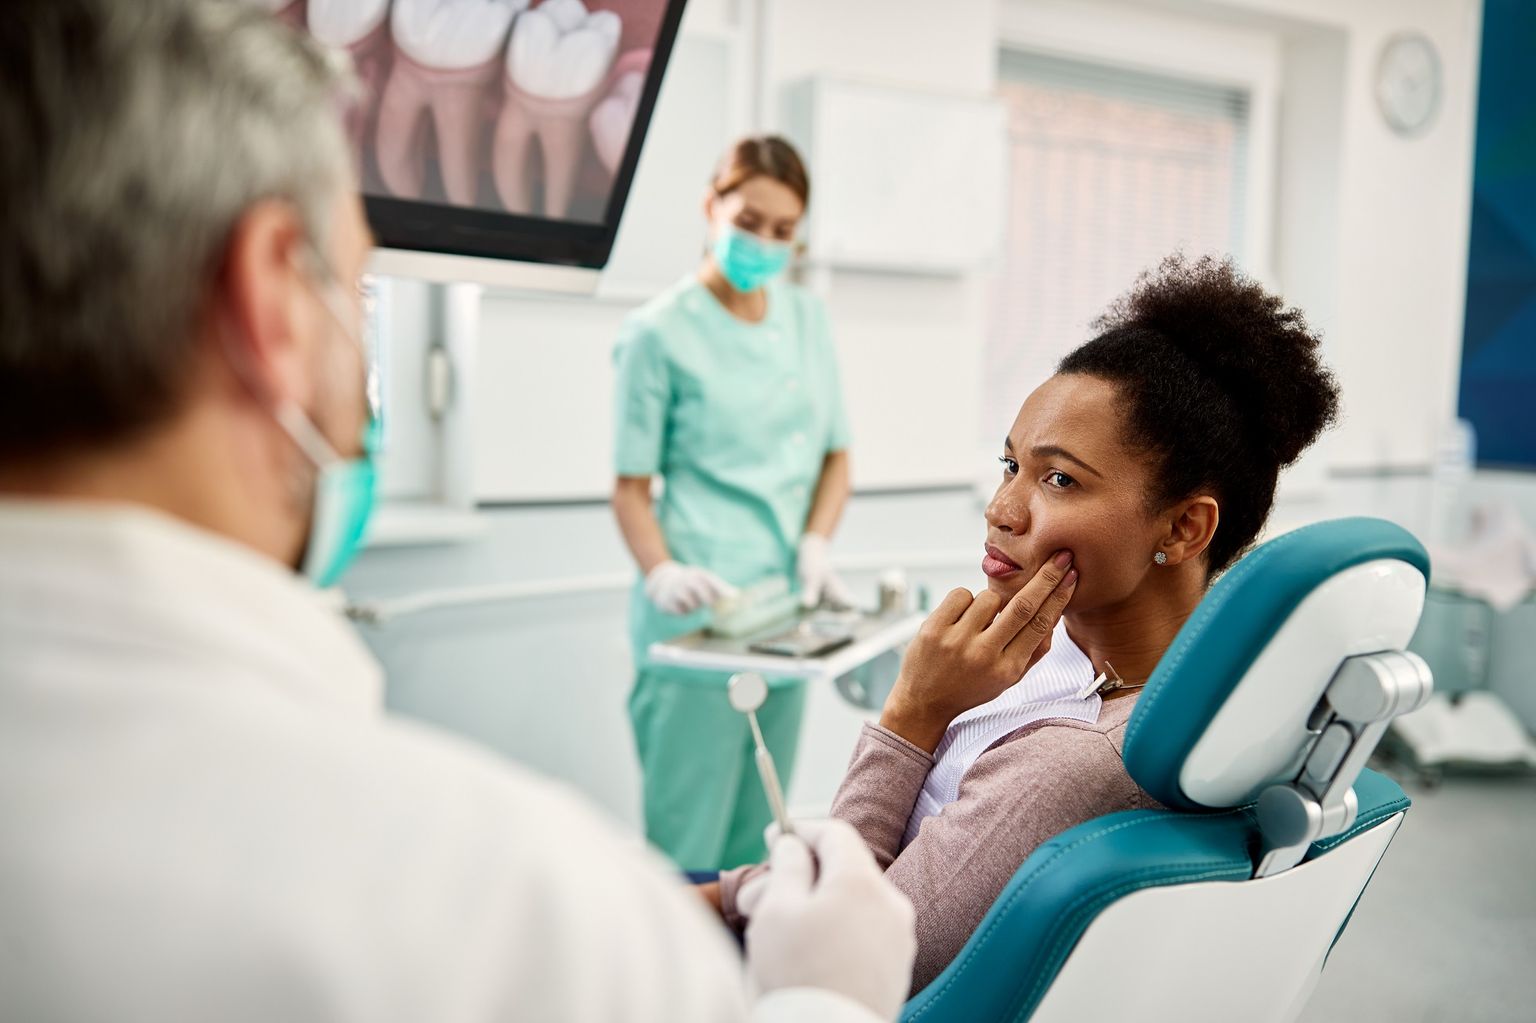 Une femme montre à un dentiste dans la salle de soins l'endroit de sa bouche où elle a mal aux dents.